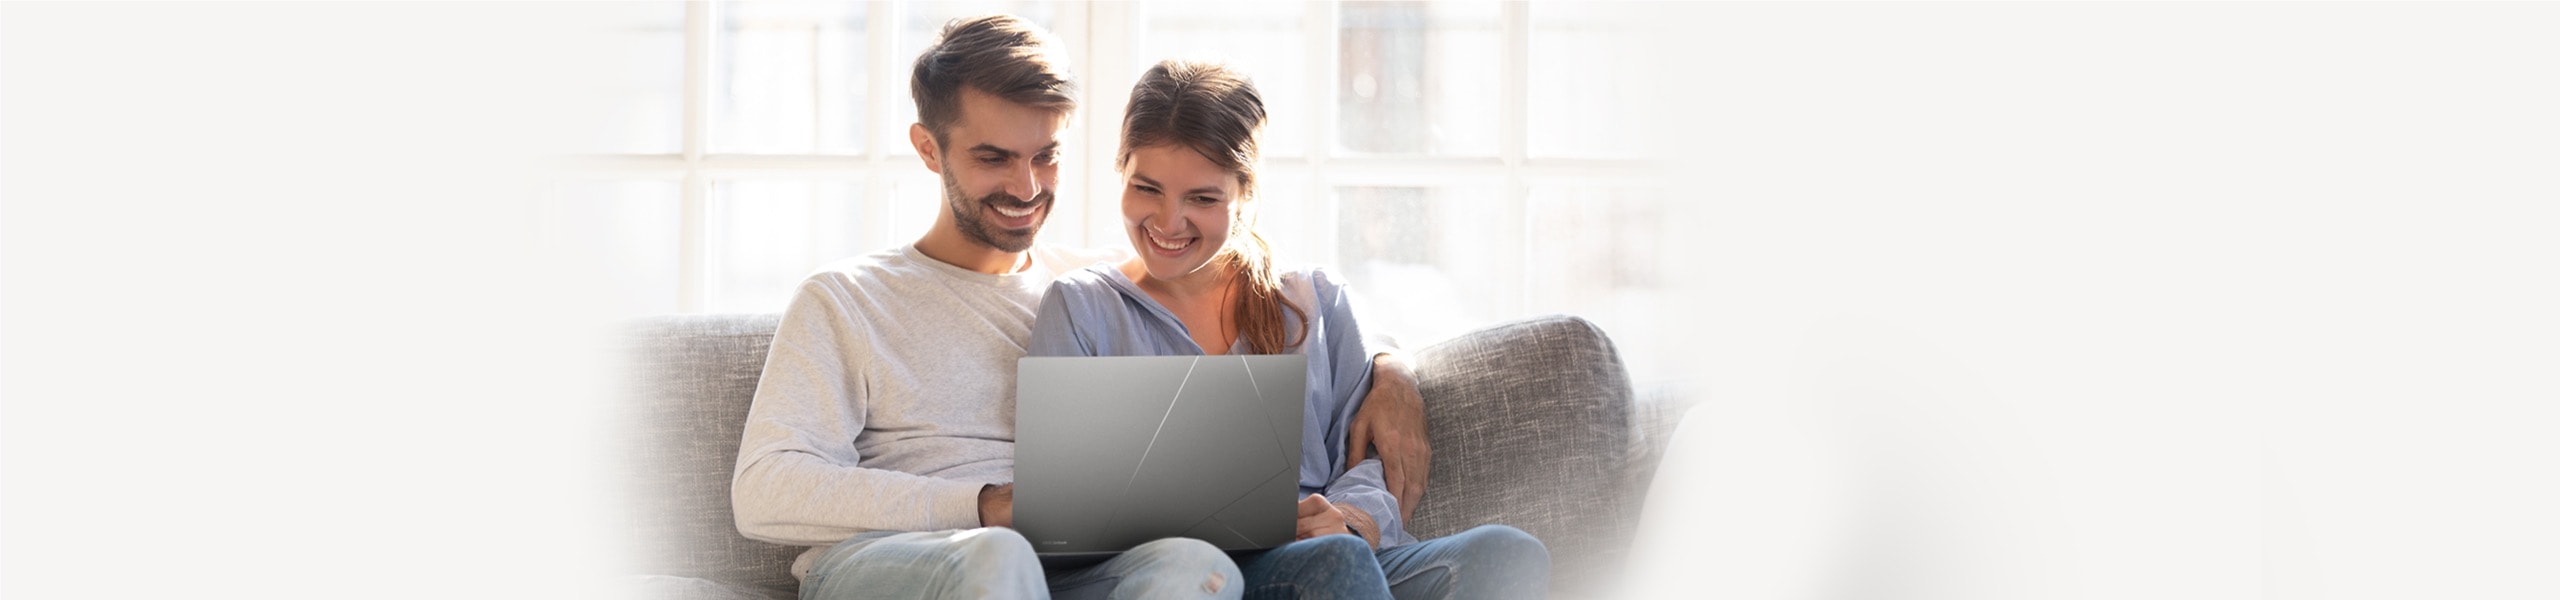 En kvinna och en man som sitter tillsammans och använder bärbar dator